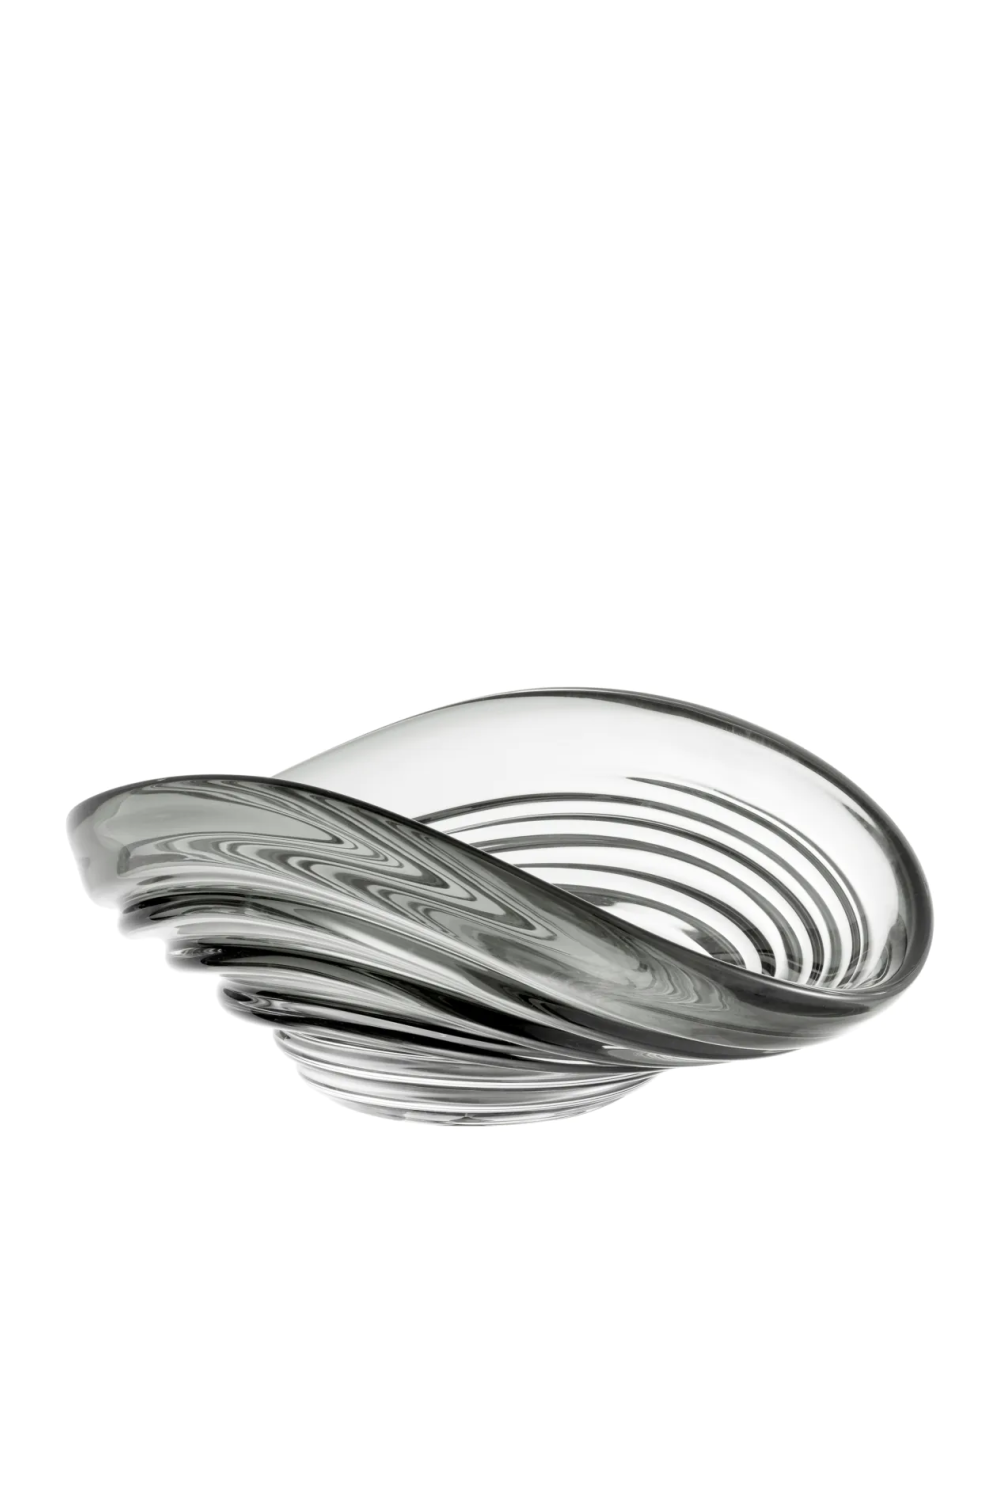 Modern Glass Bowl S | Eichholtz Pheadra | Oroatrade.com